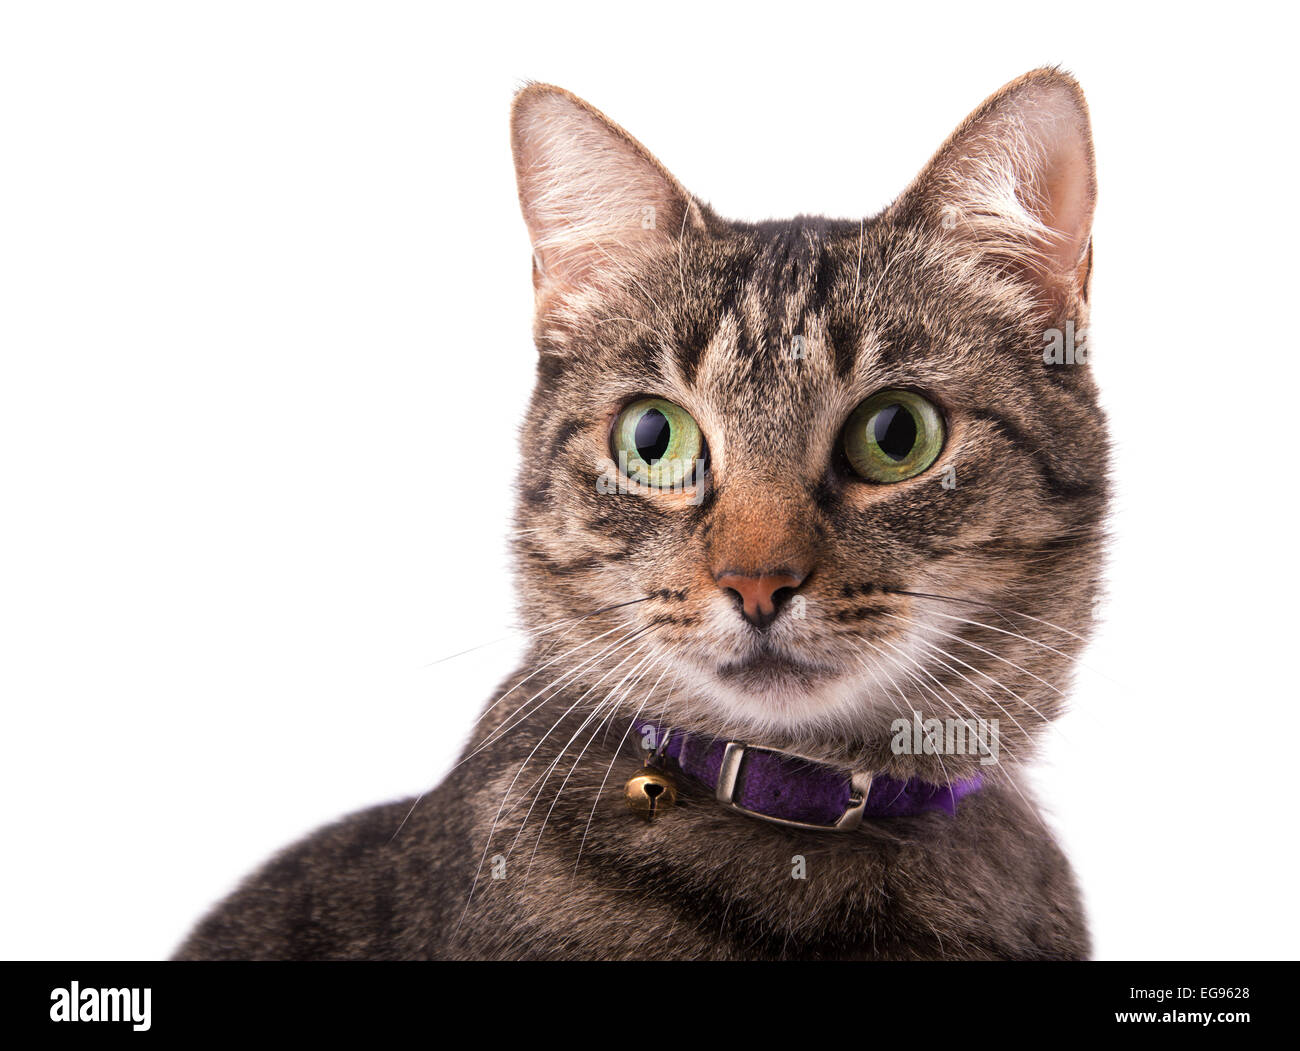 Primo piano di una brown tabby cat guardando a sinistra del visualizzatore con una curiosa espressione, su bianco Foto Stock